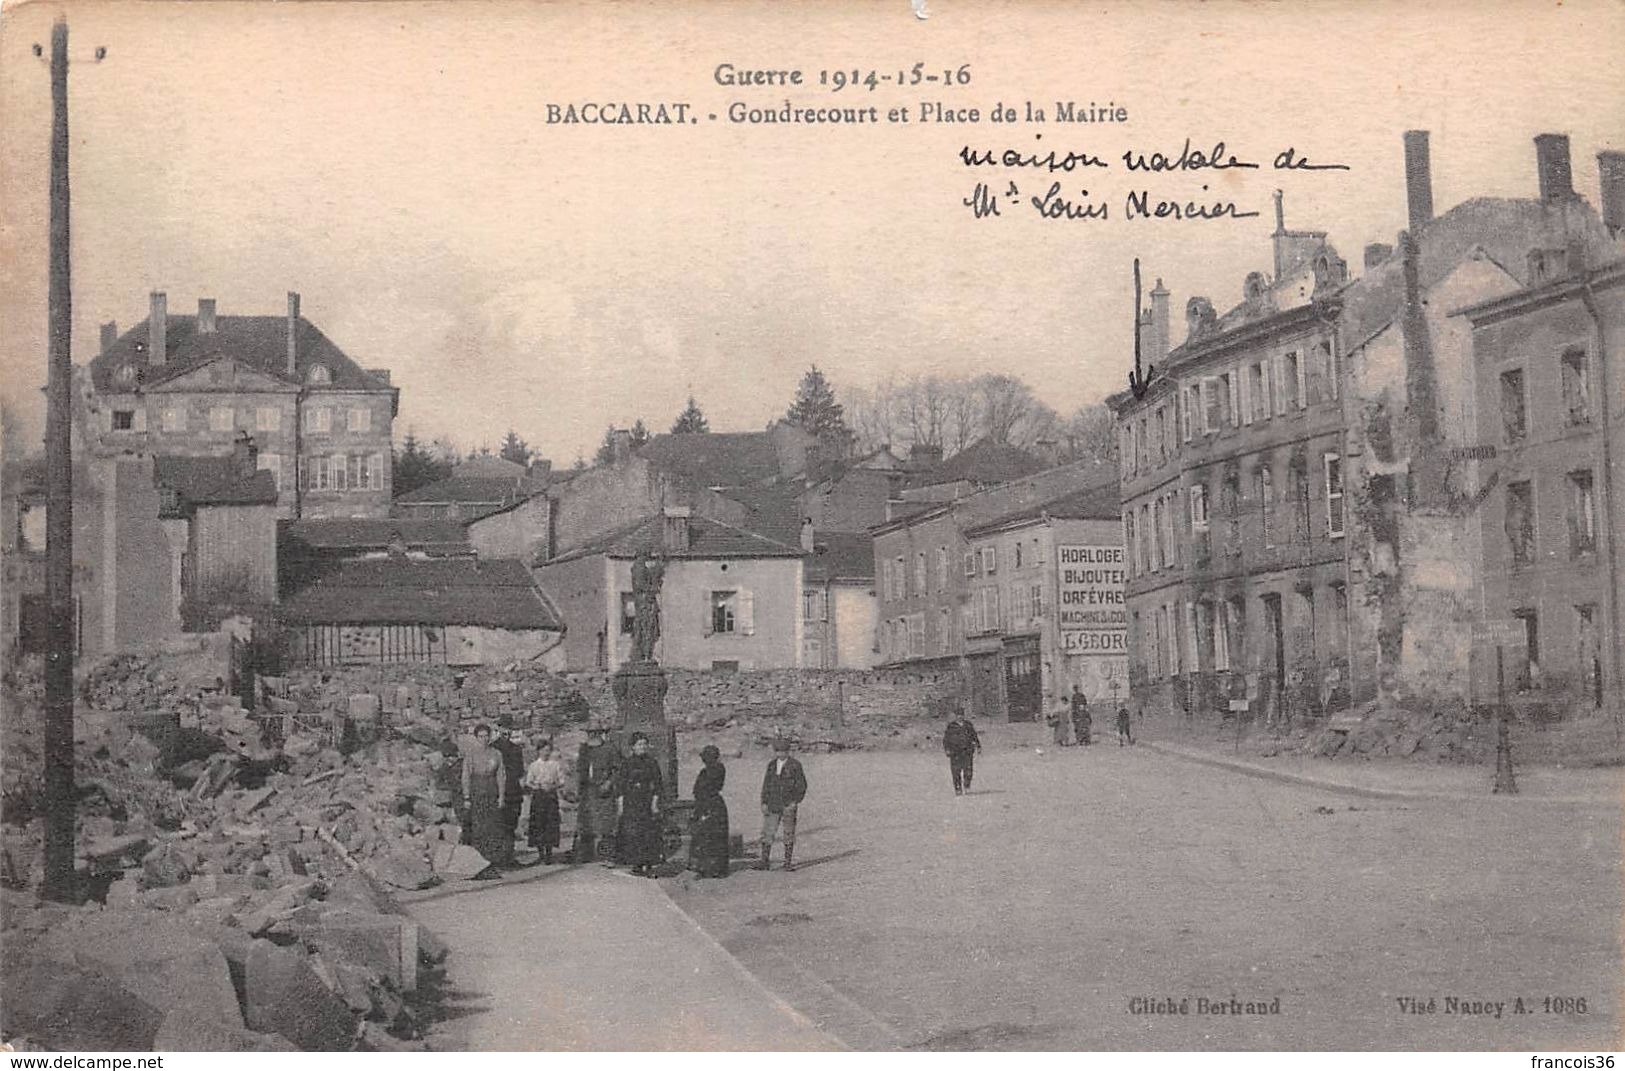 Lot de 45 CPA de Baccarat (54) - Ruines - pendant la guerre 1914 1918 en Lorraine - bon état